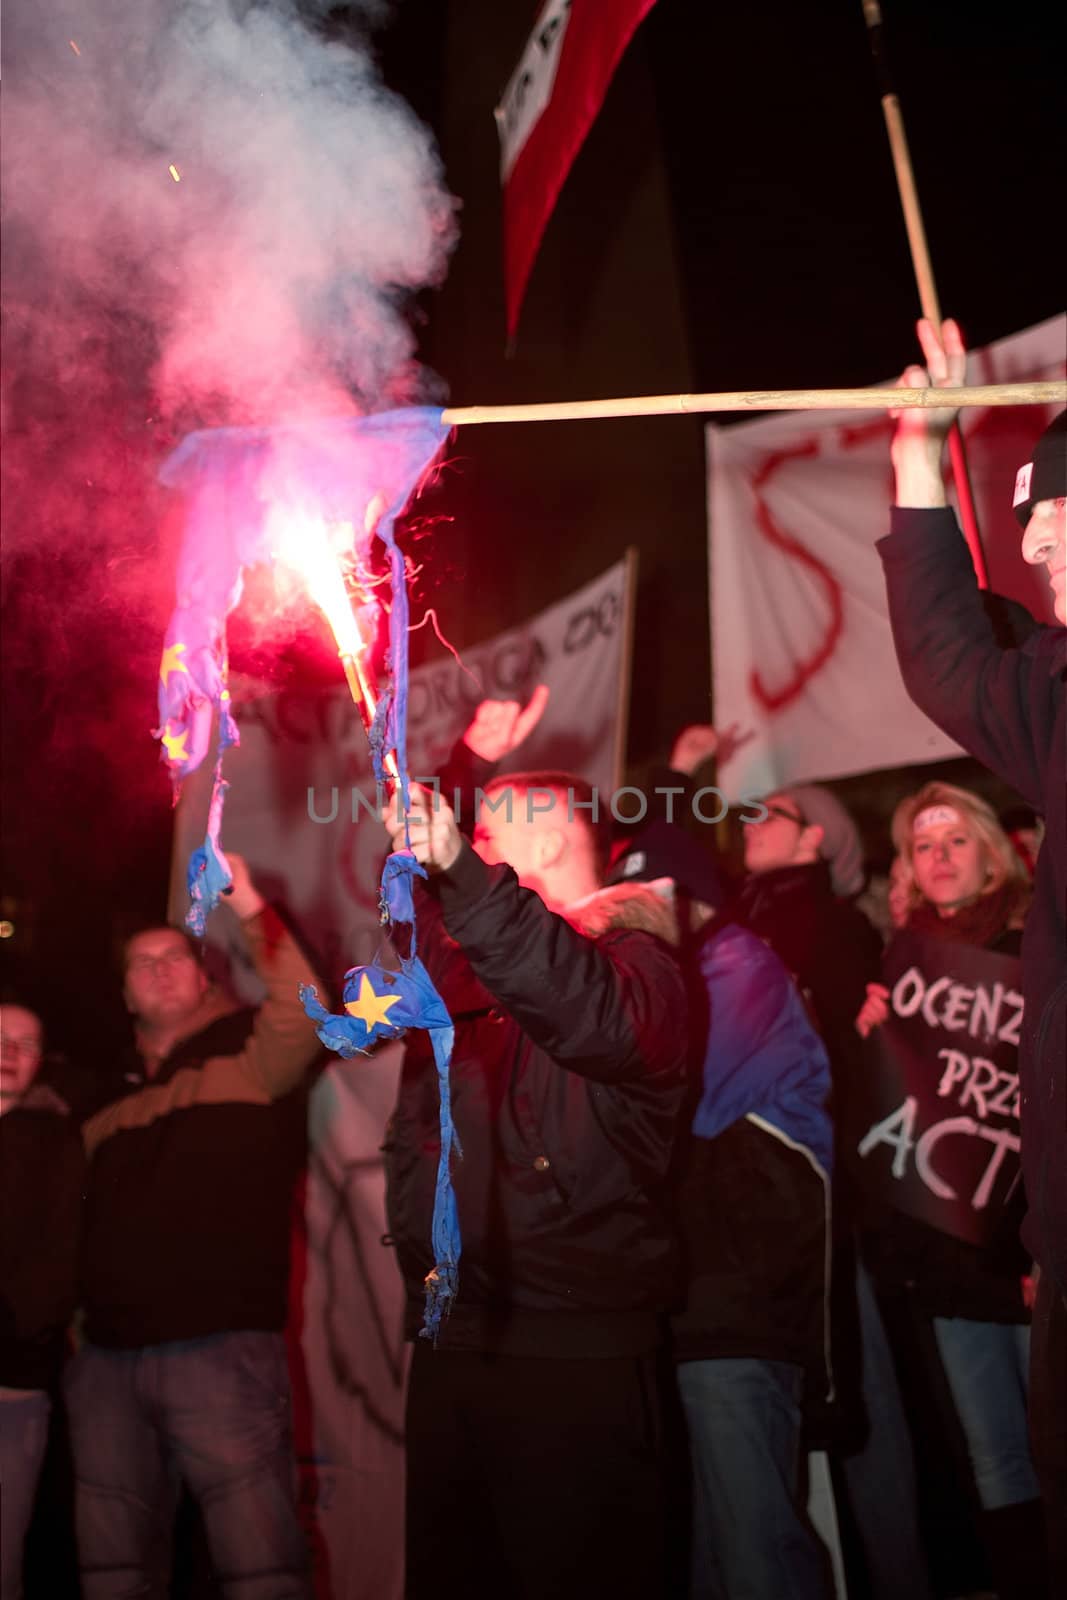 2012.01.25 Gorzow Wielkopolski. Anti ACTA ( Anti-Counterfeiting Trade Agreement ) manifestation. EU Flag Burning.